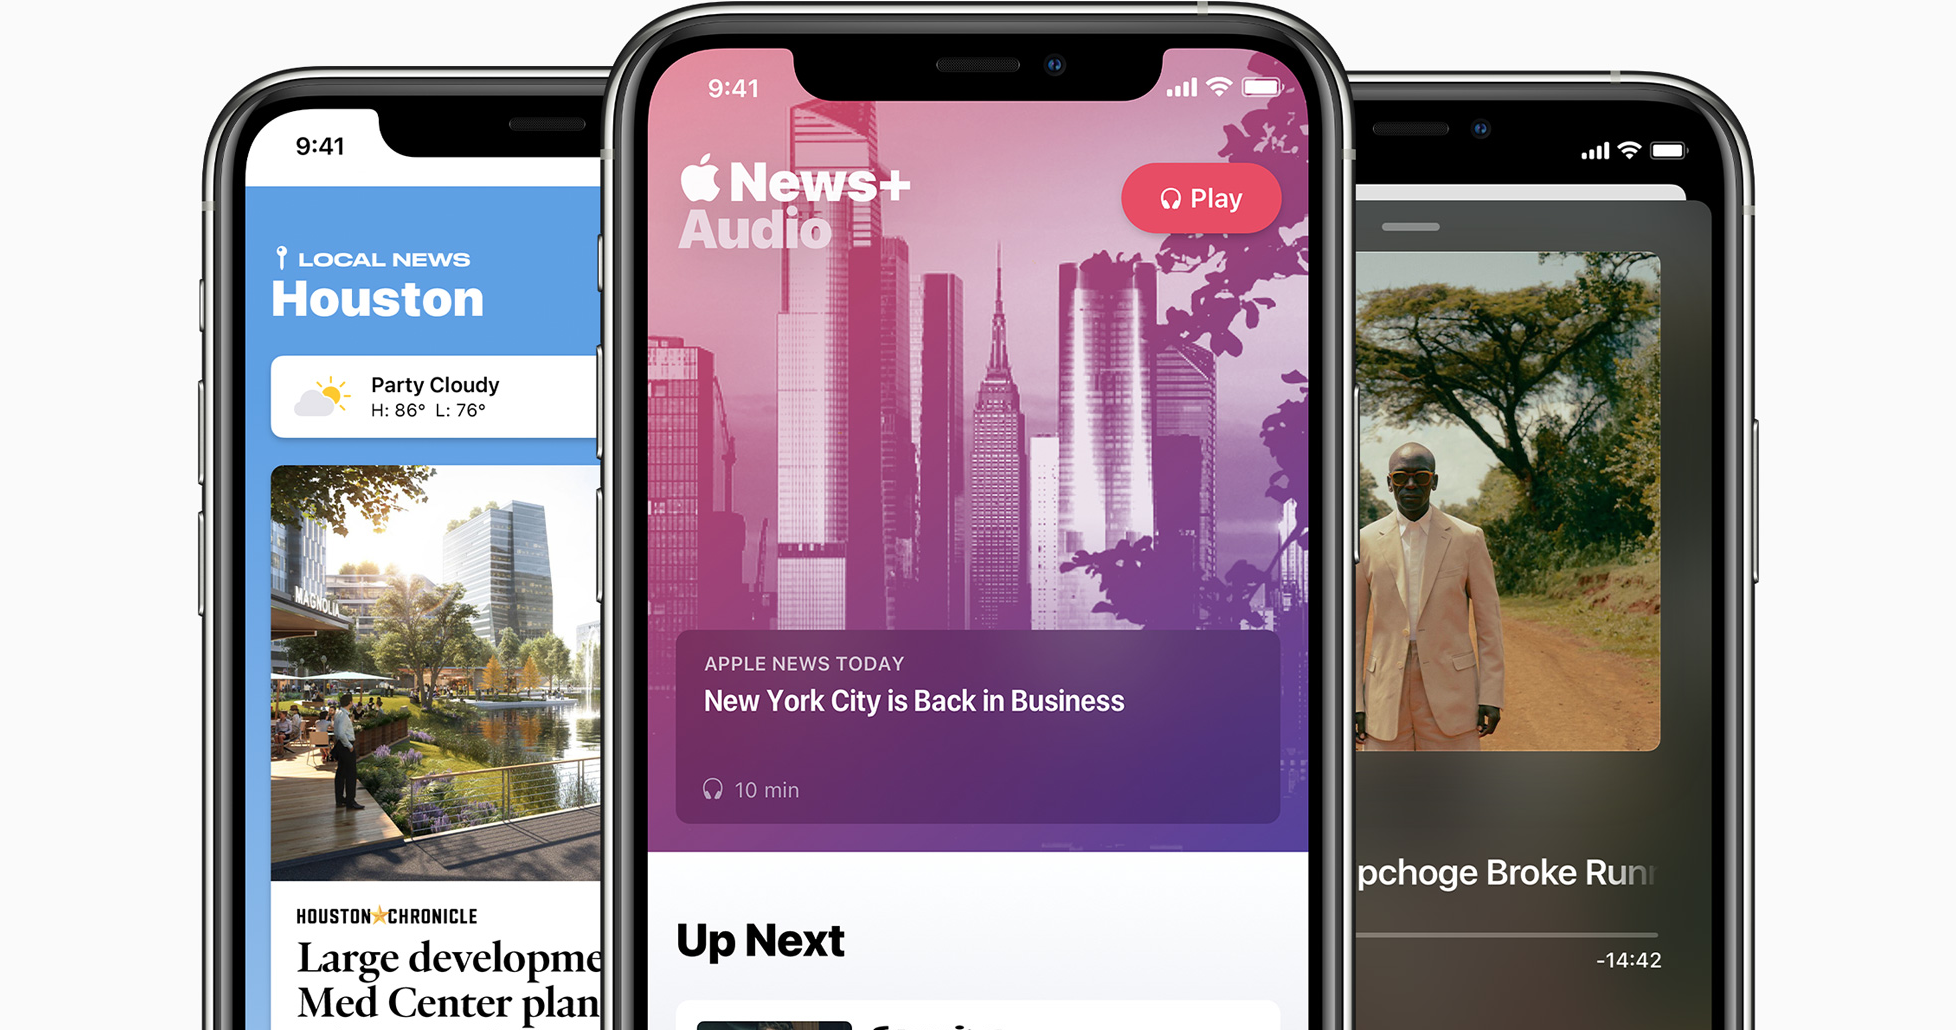 خدمات 16 يوليو 2020
Apple الأخبار تأتي مع البودكاست الإخباري اليومي الخاص بها